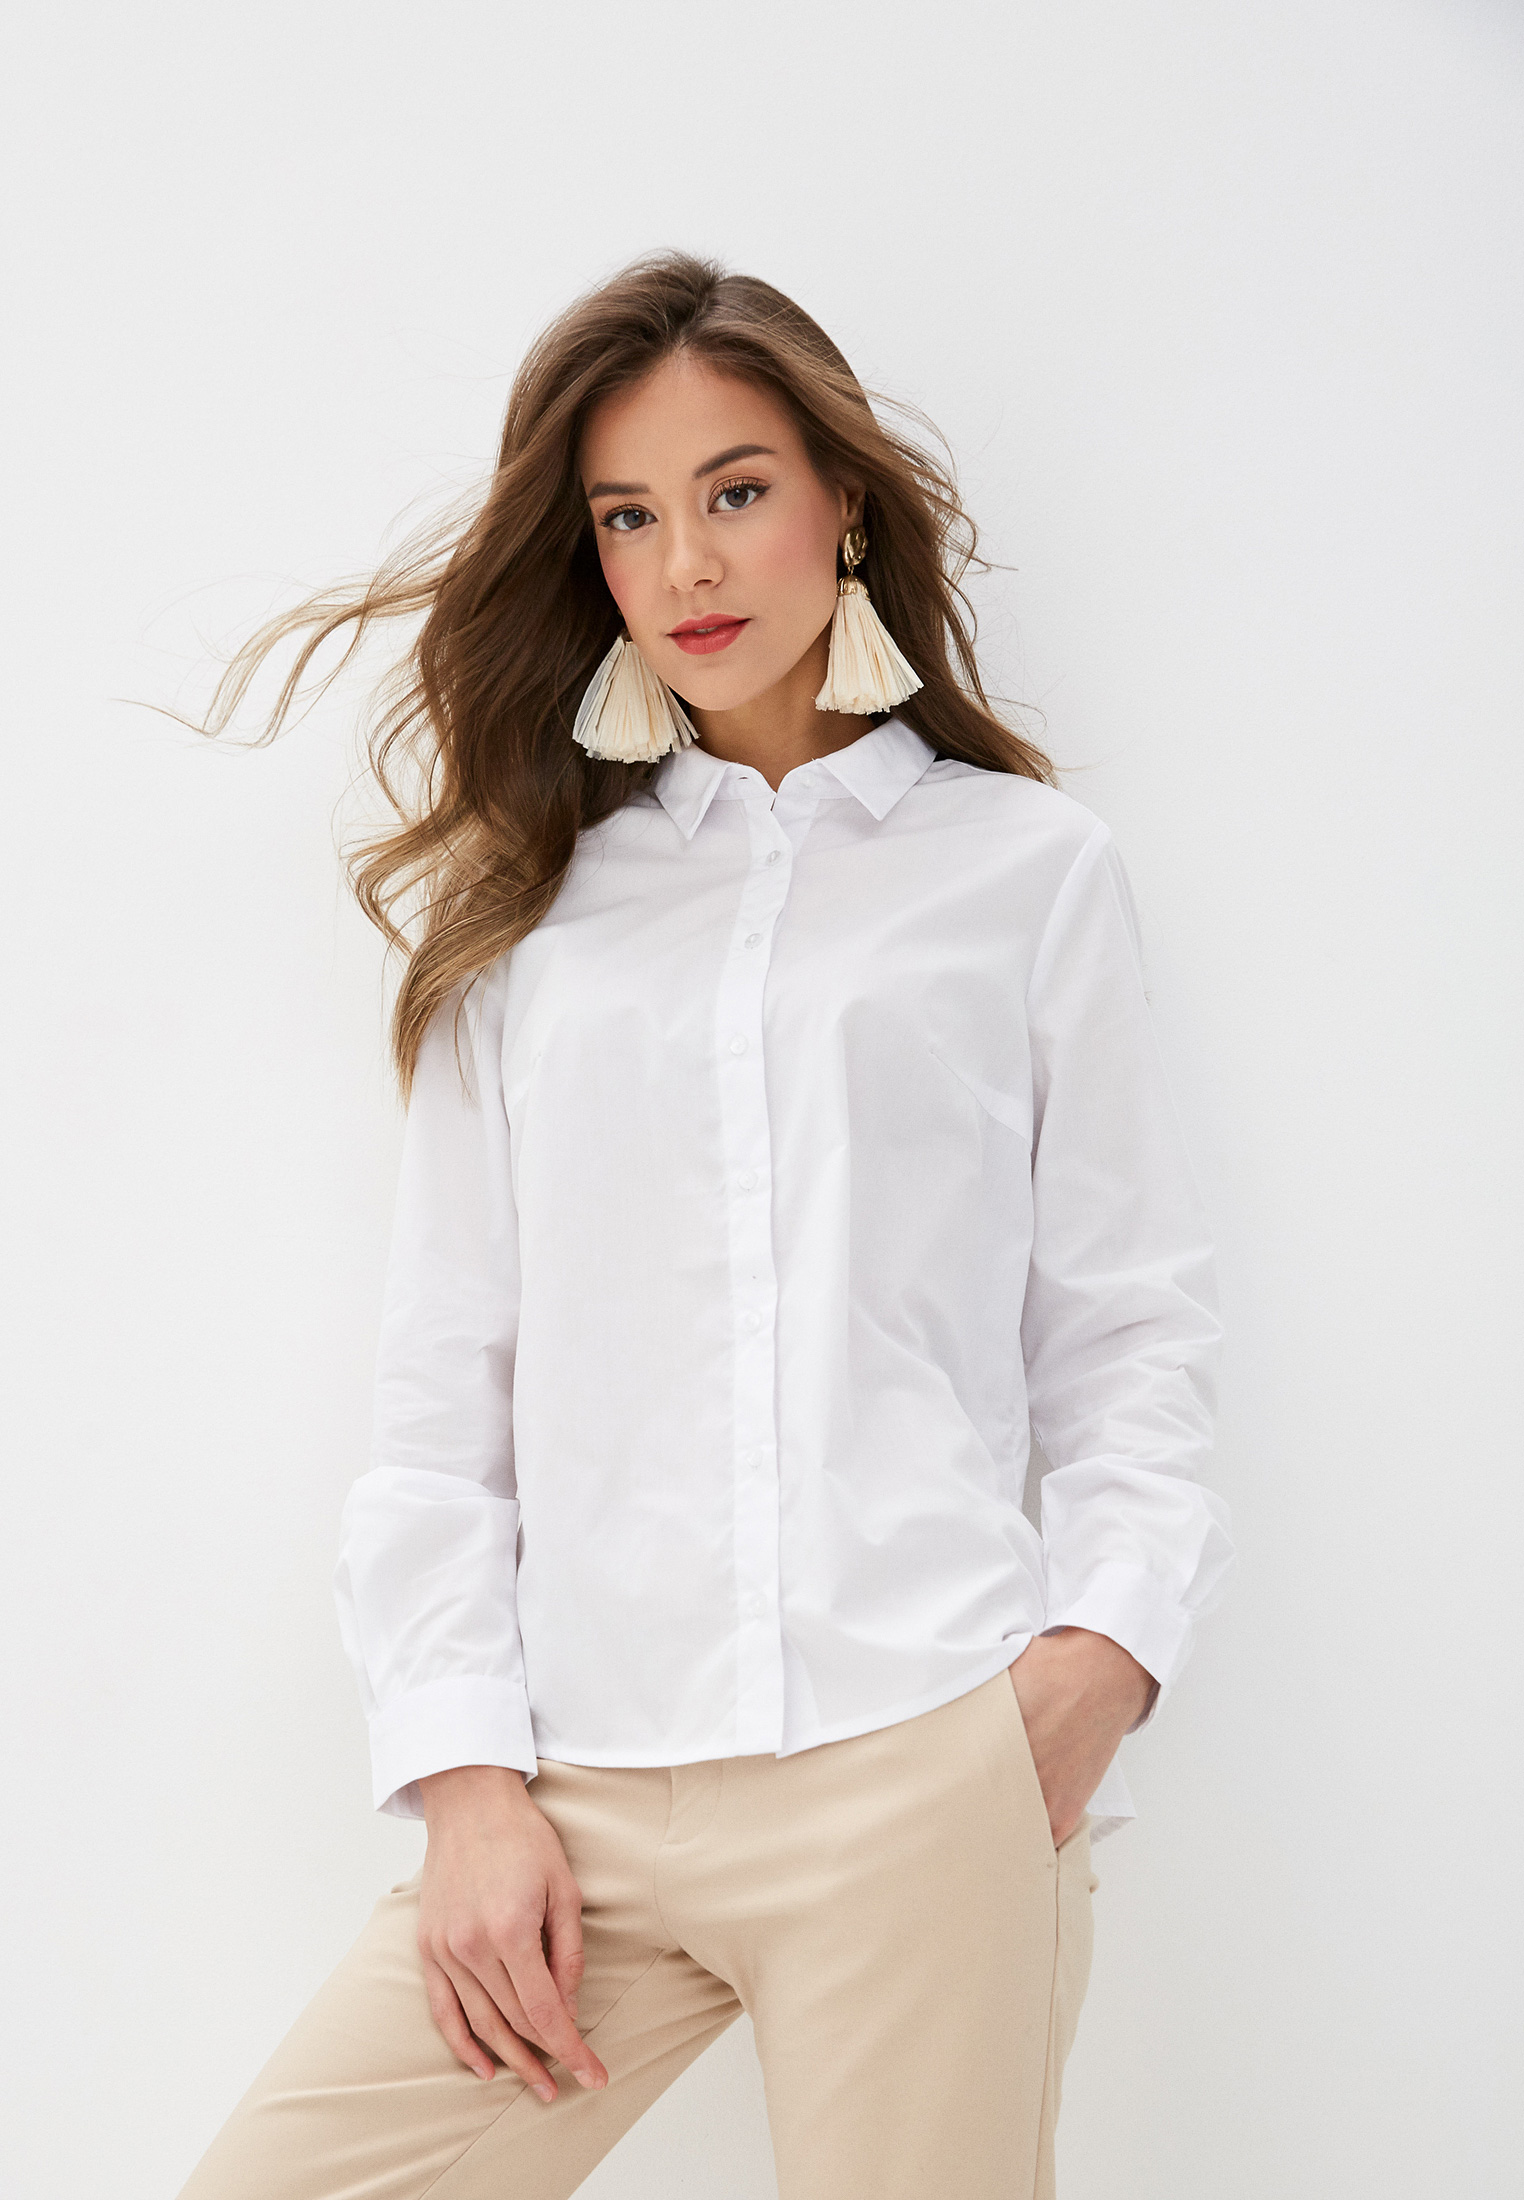 Купить женскую белую рубашку с длинным рукавом. Рубашка Zarina. Zarina белая рубашка. Рубашка женская Zarina 2266101302-2. Белая блузка Zarina-ruban.